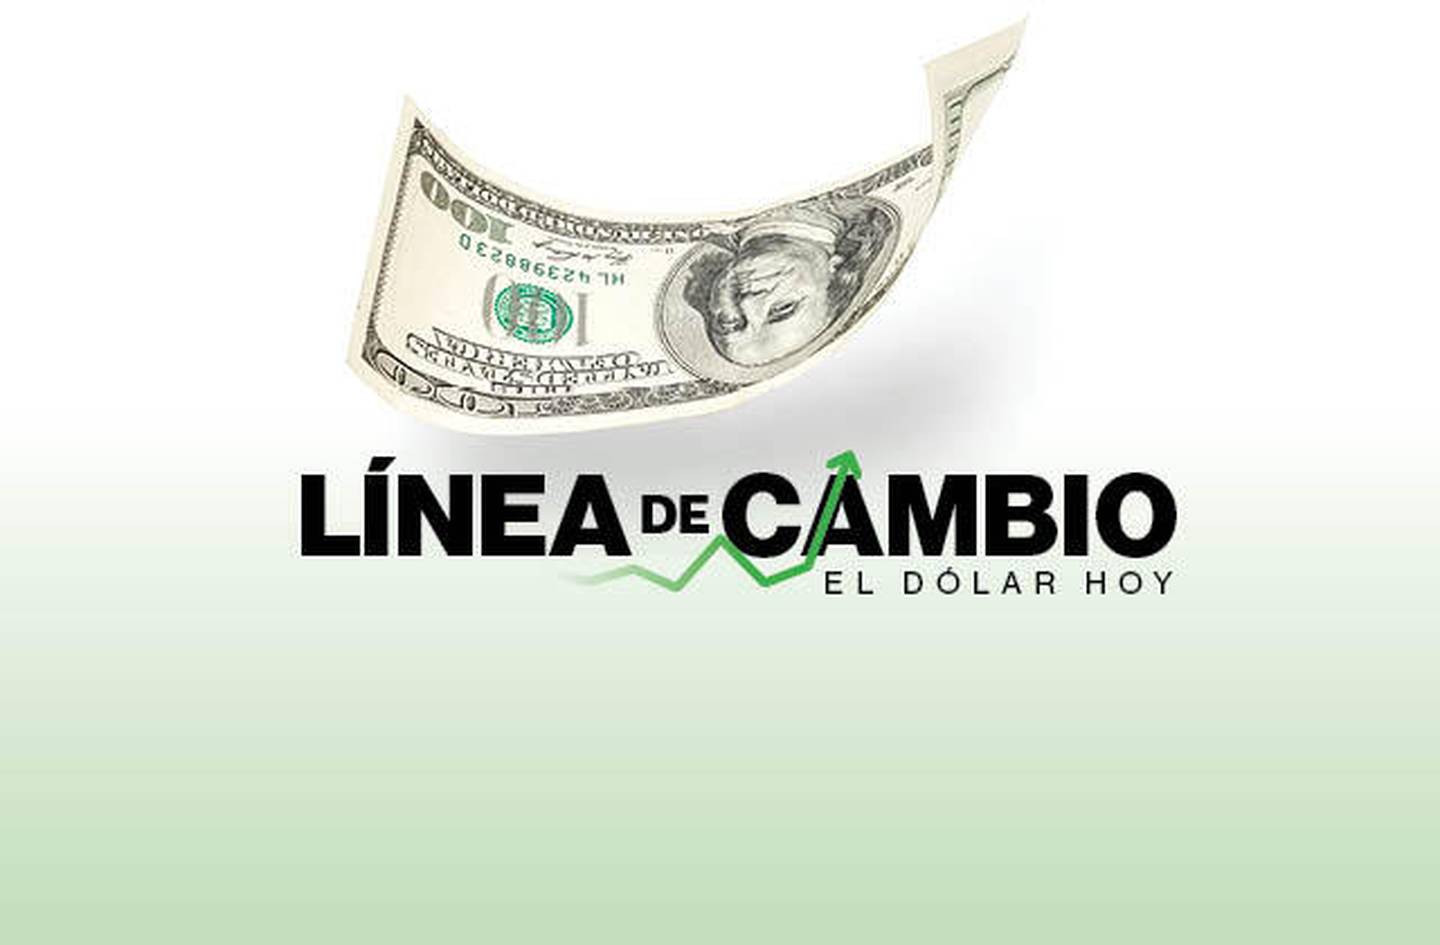 Dólar hoy: Peso colombiano lideró ganancias frente al billete verde en LatAm